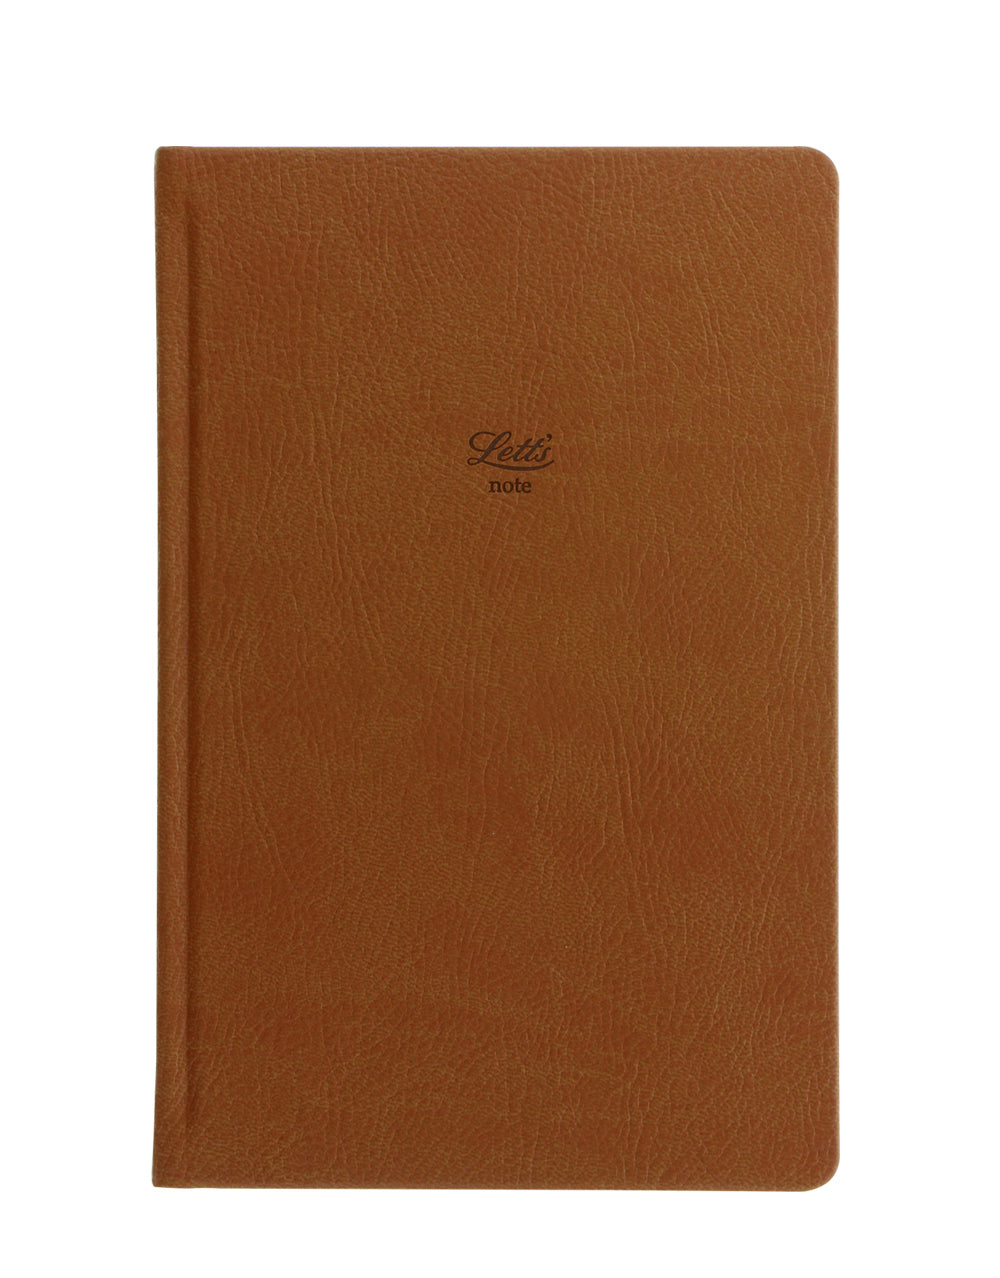 Origins Book Ruled Notebook Tan#color_tan